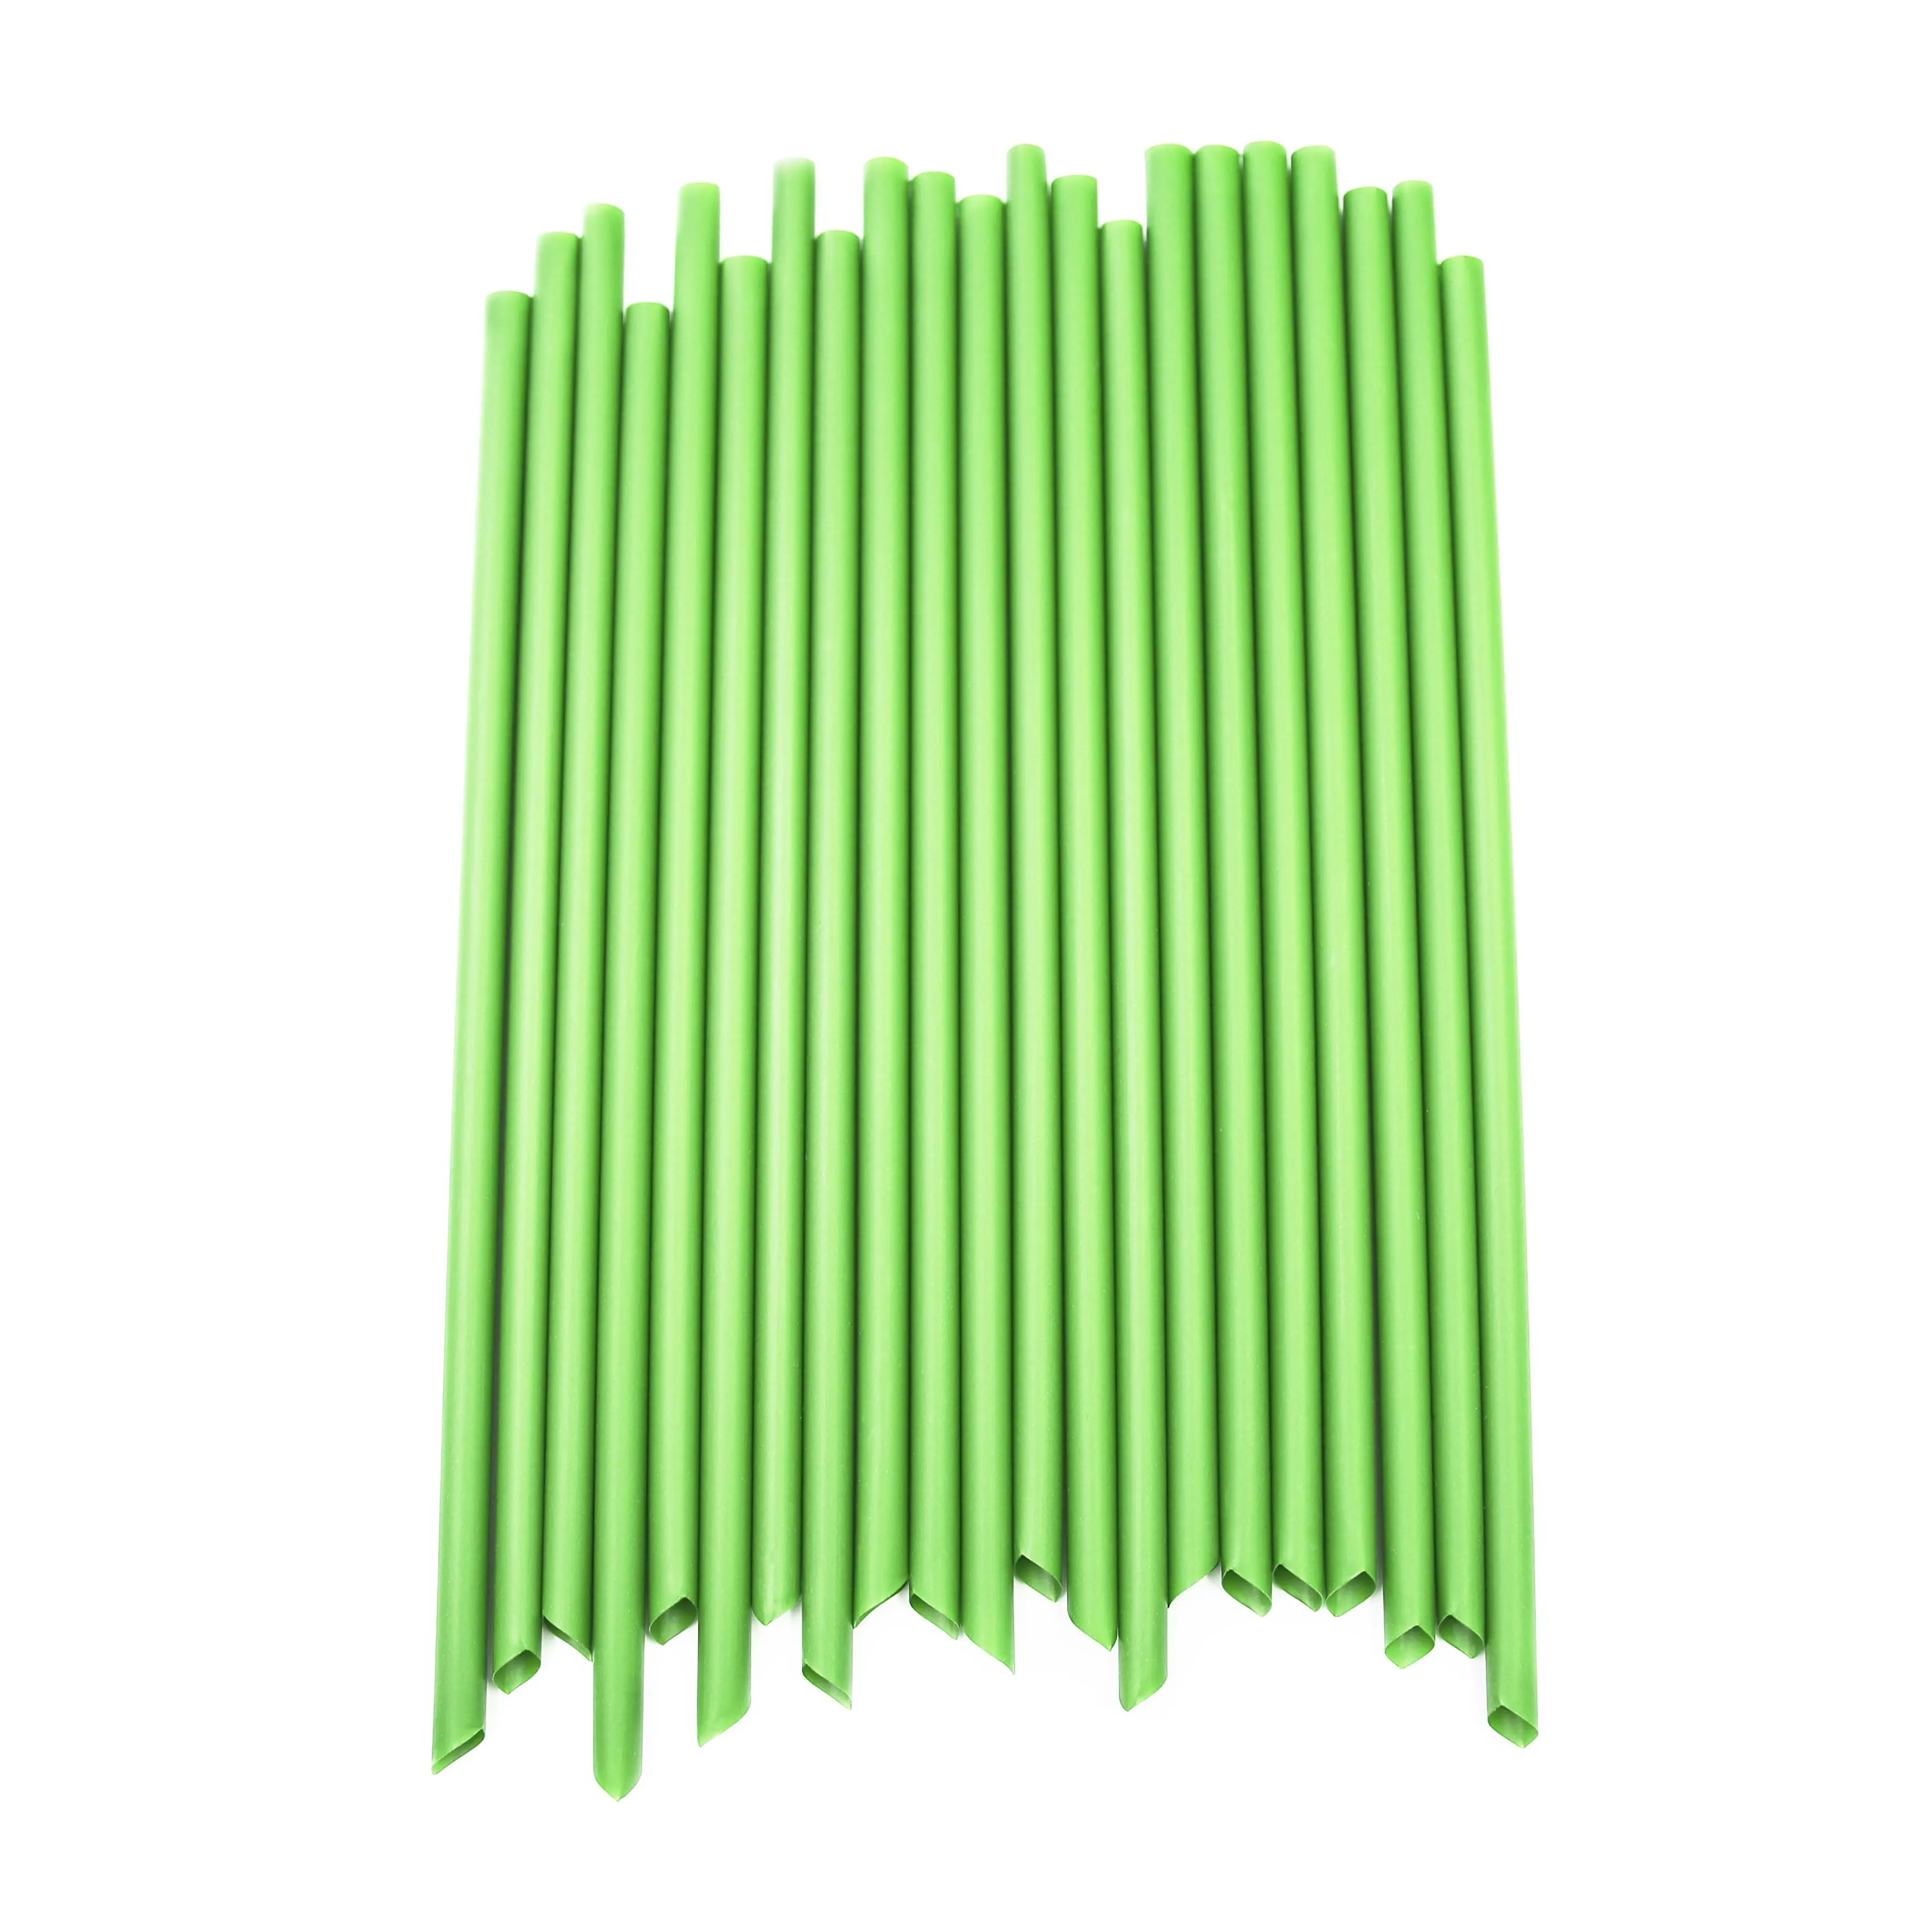  Green Straws in Bulk